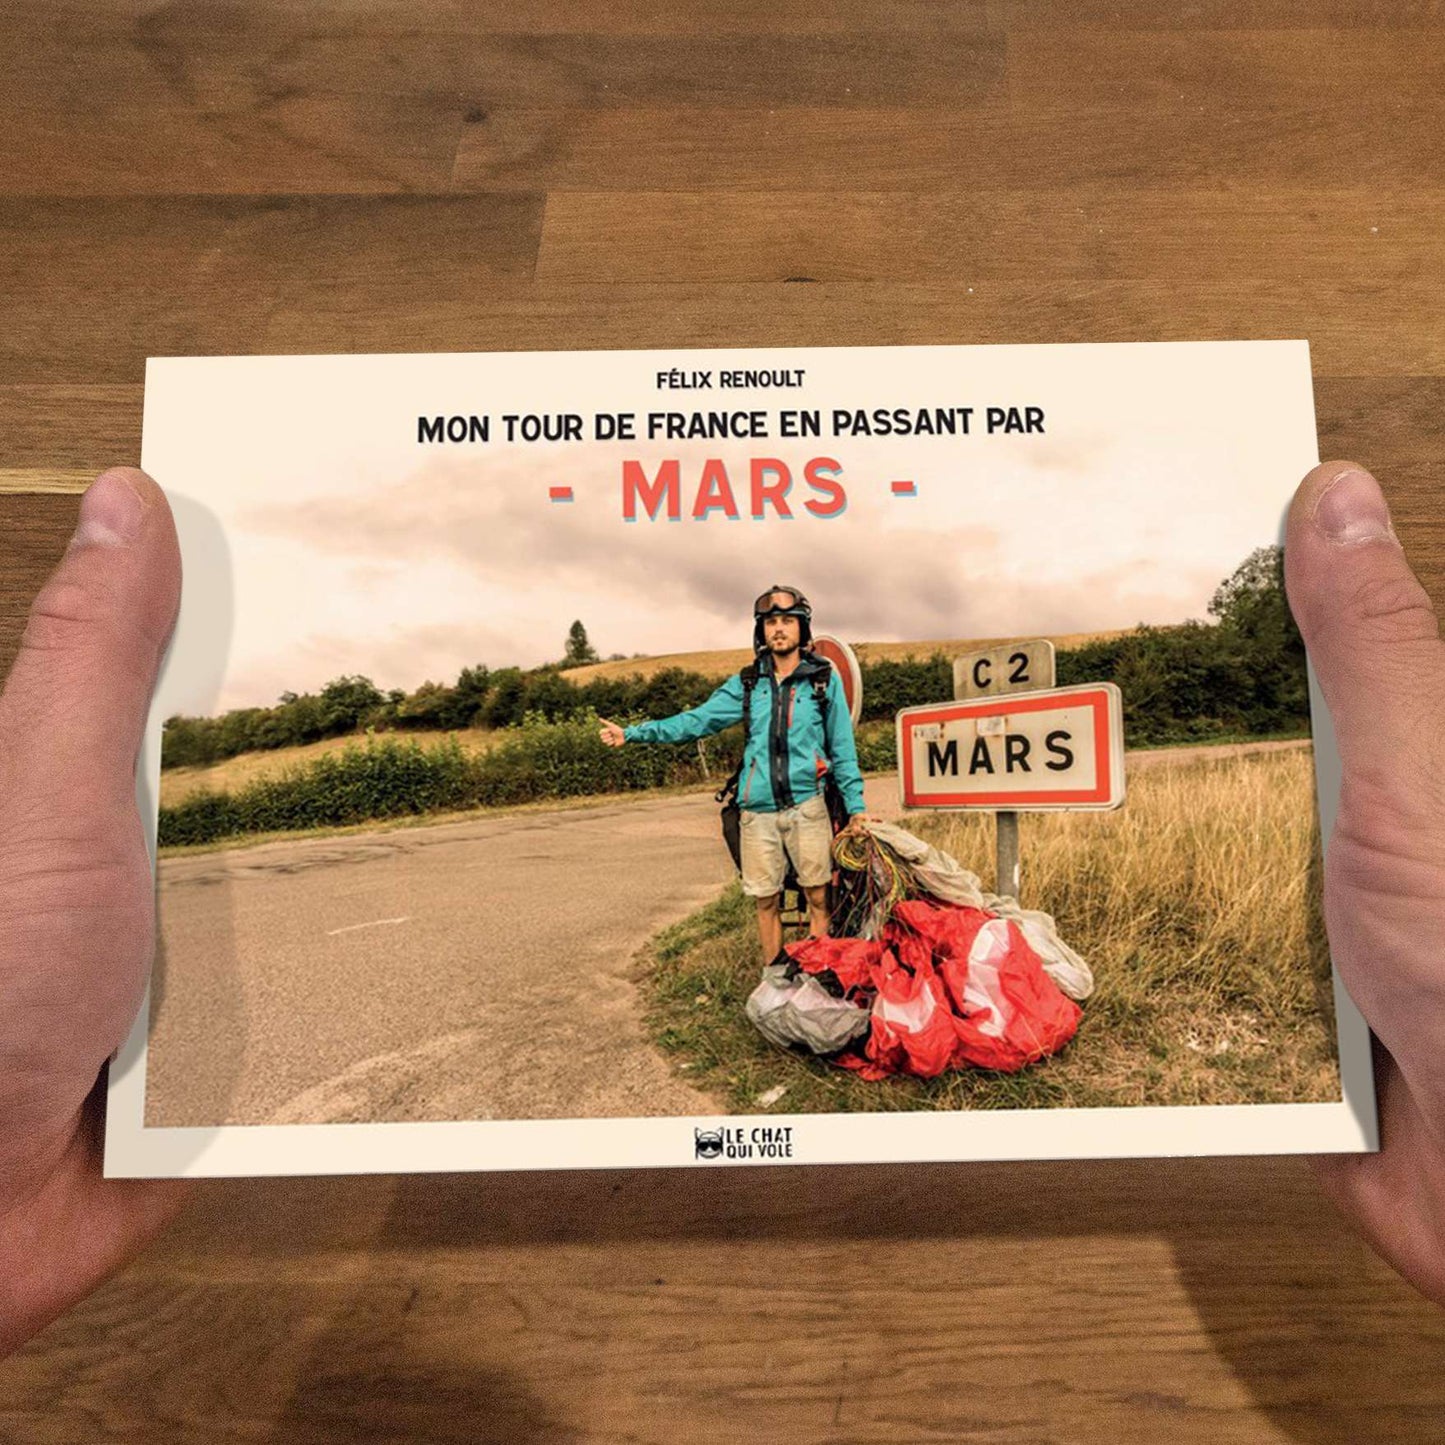 Mon tour de France en passant par Mars